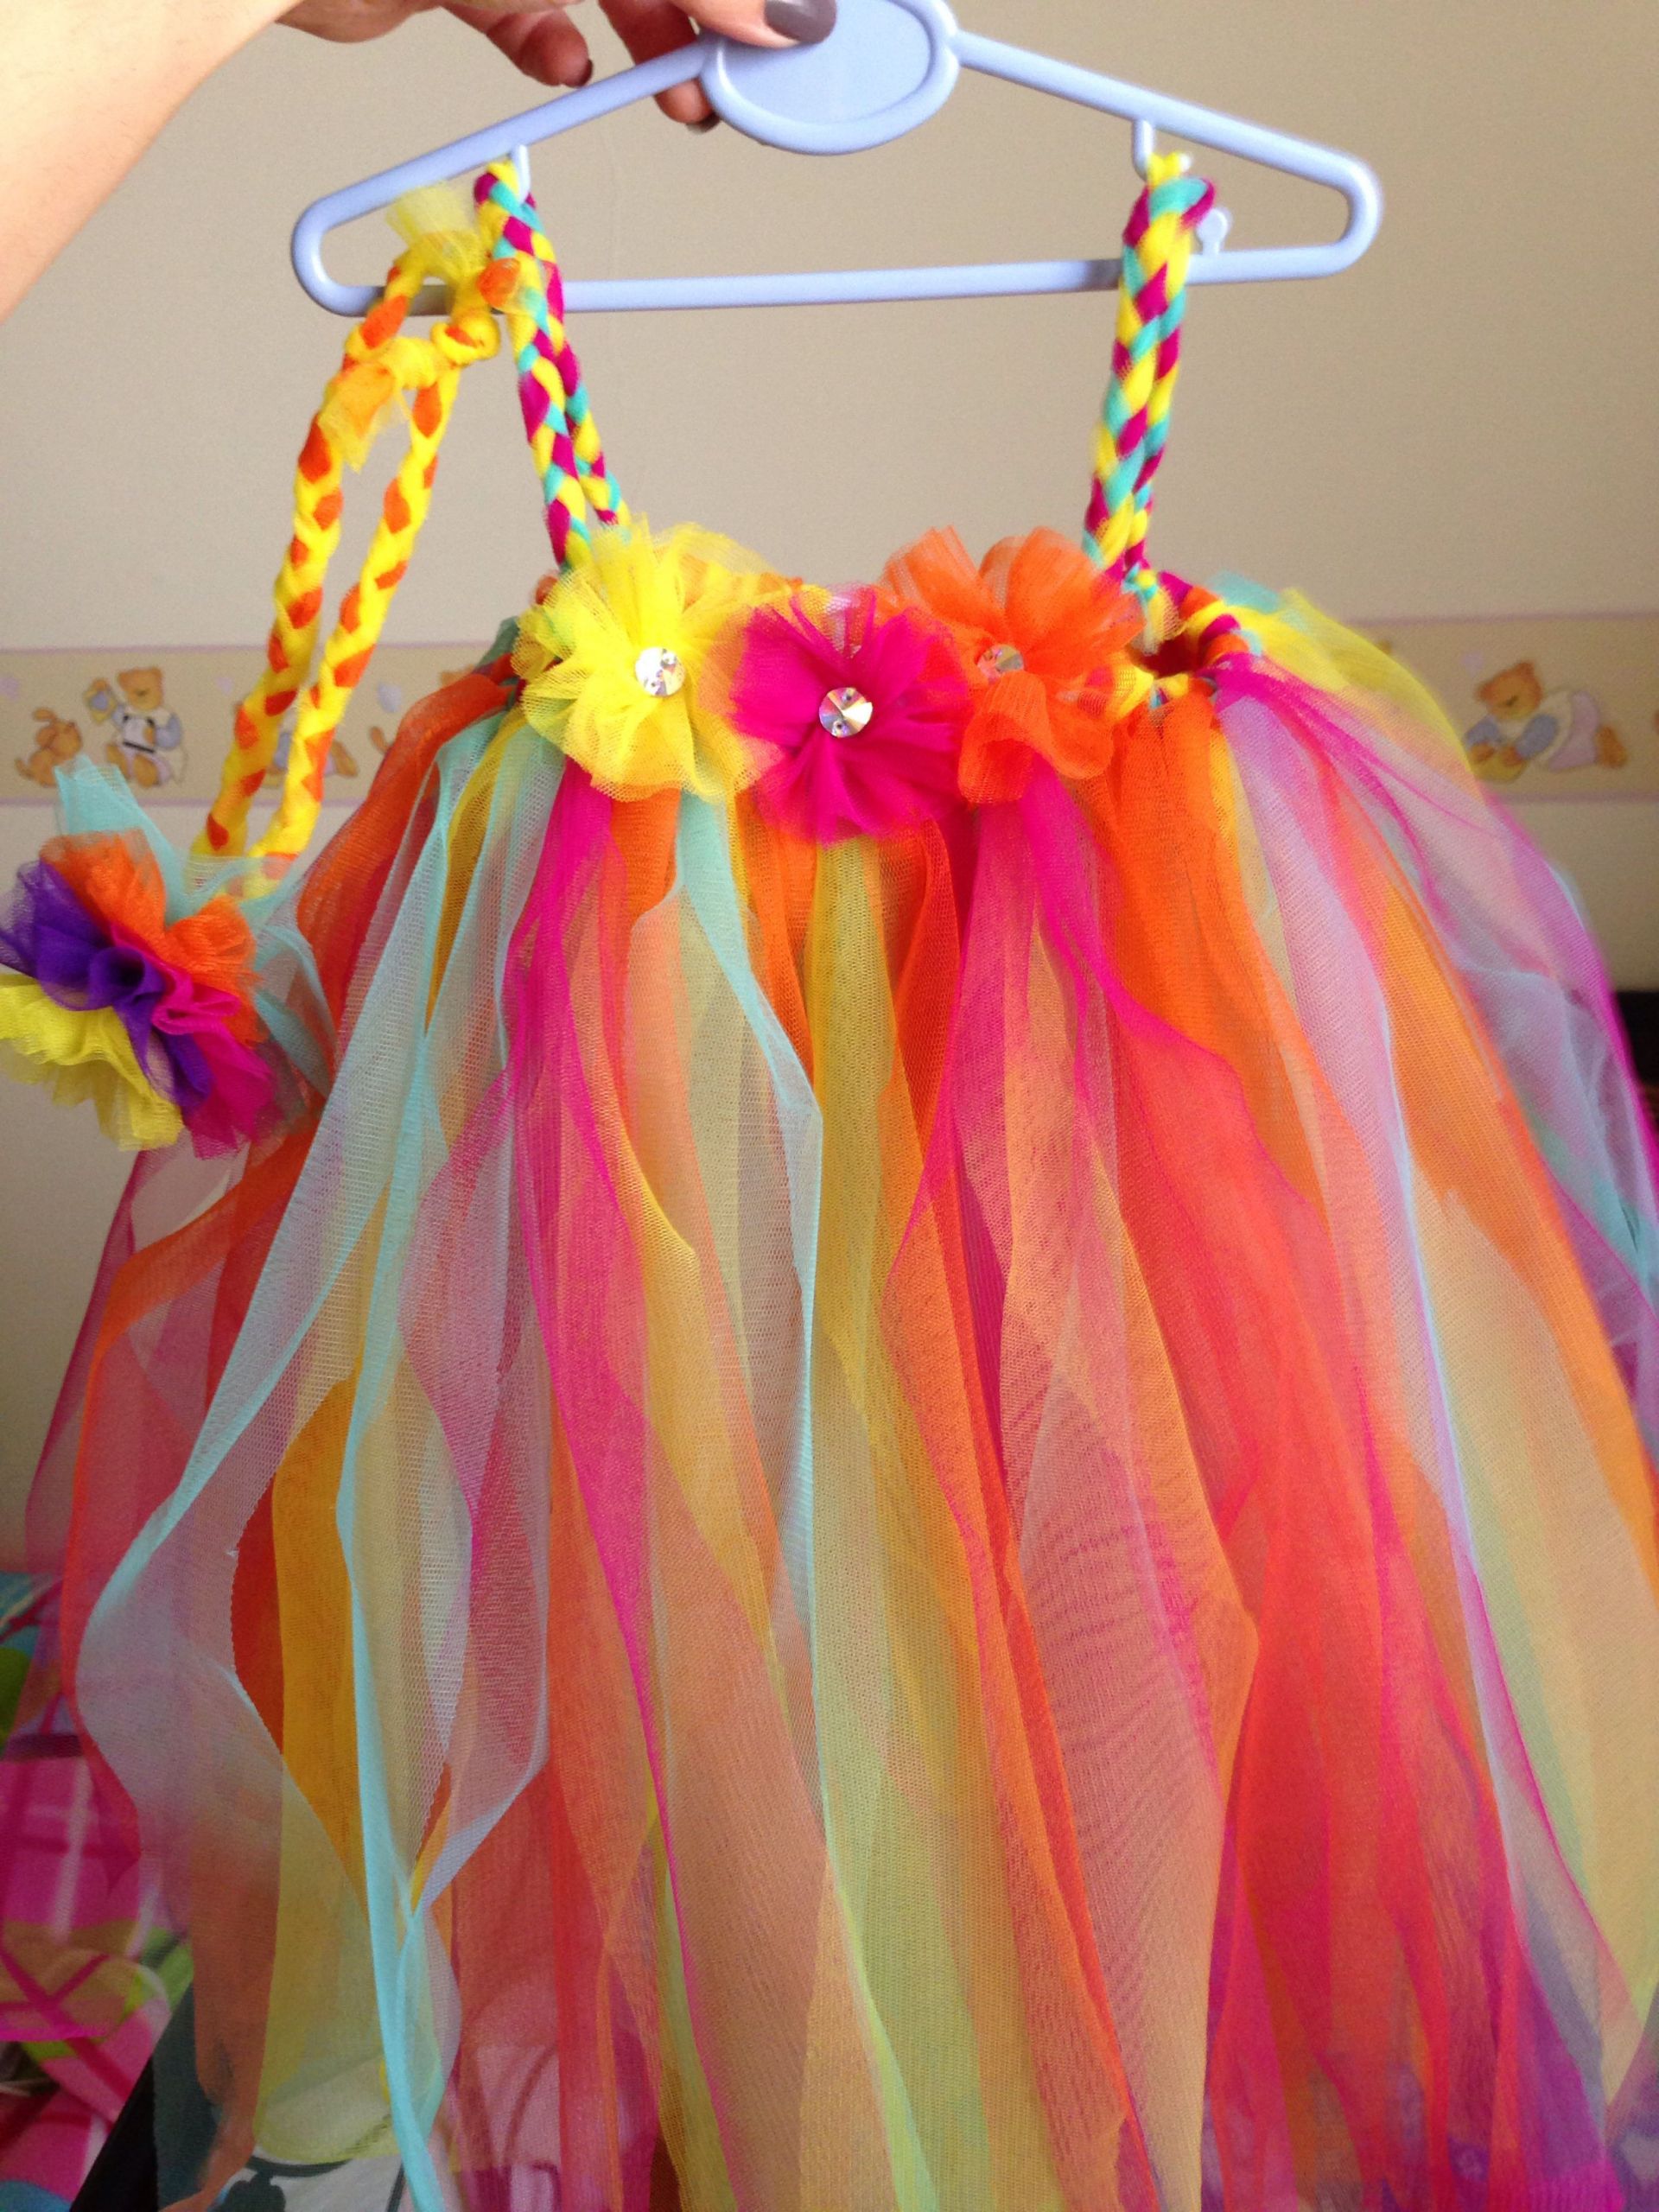 DIY Tutu Dress For Toddler
 Diy tutu dress